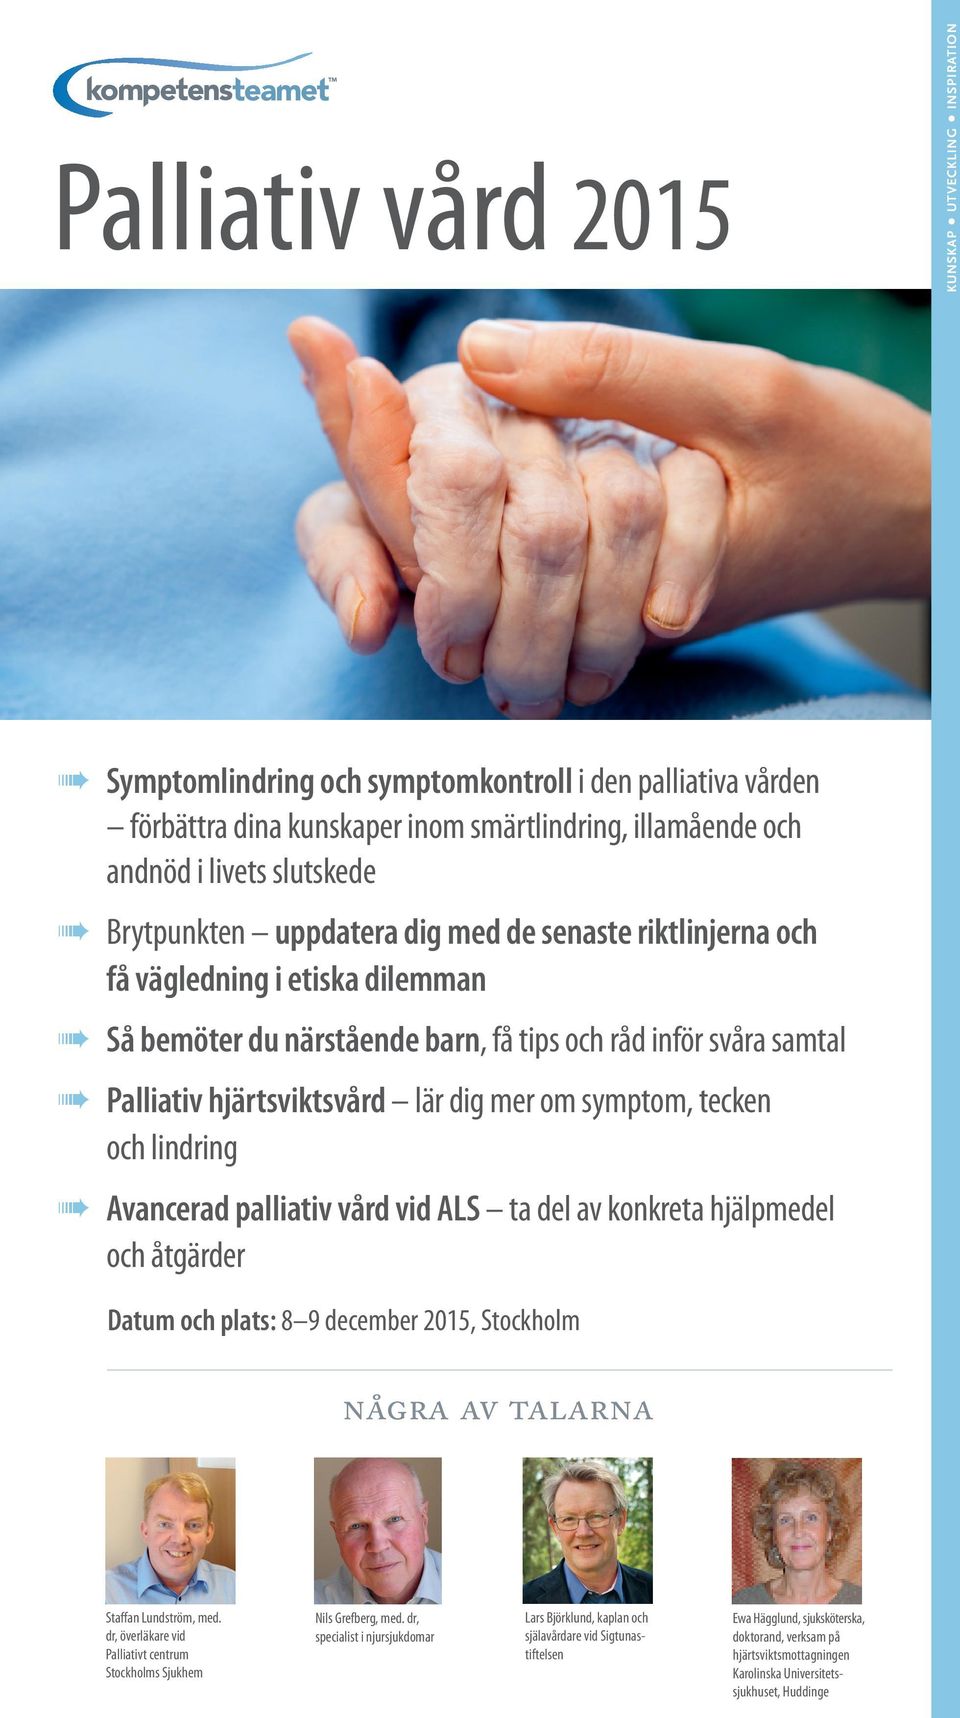 symptom, tecken och lindring Avancerad palliativ vård vid ALS ta del av konkreta hjälpmedel och åtgärder Datum och plats: 8 9 december 2015, Stockholm några av talarna Staffan Lundström, med.